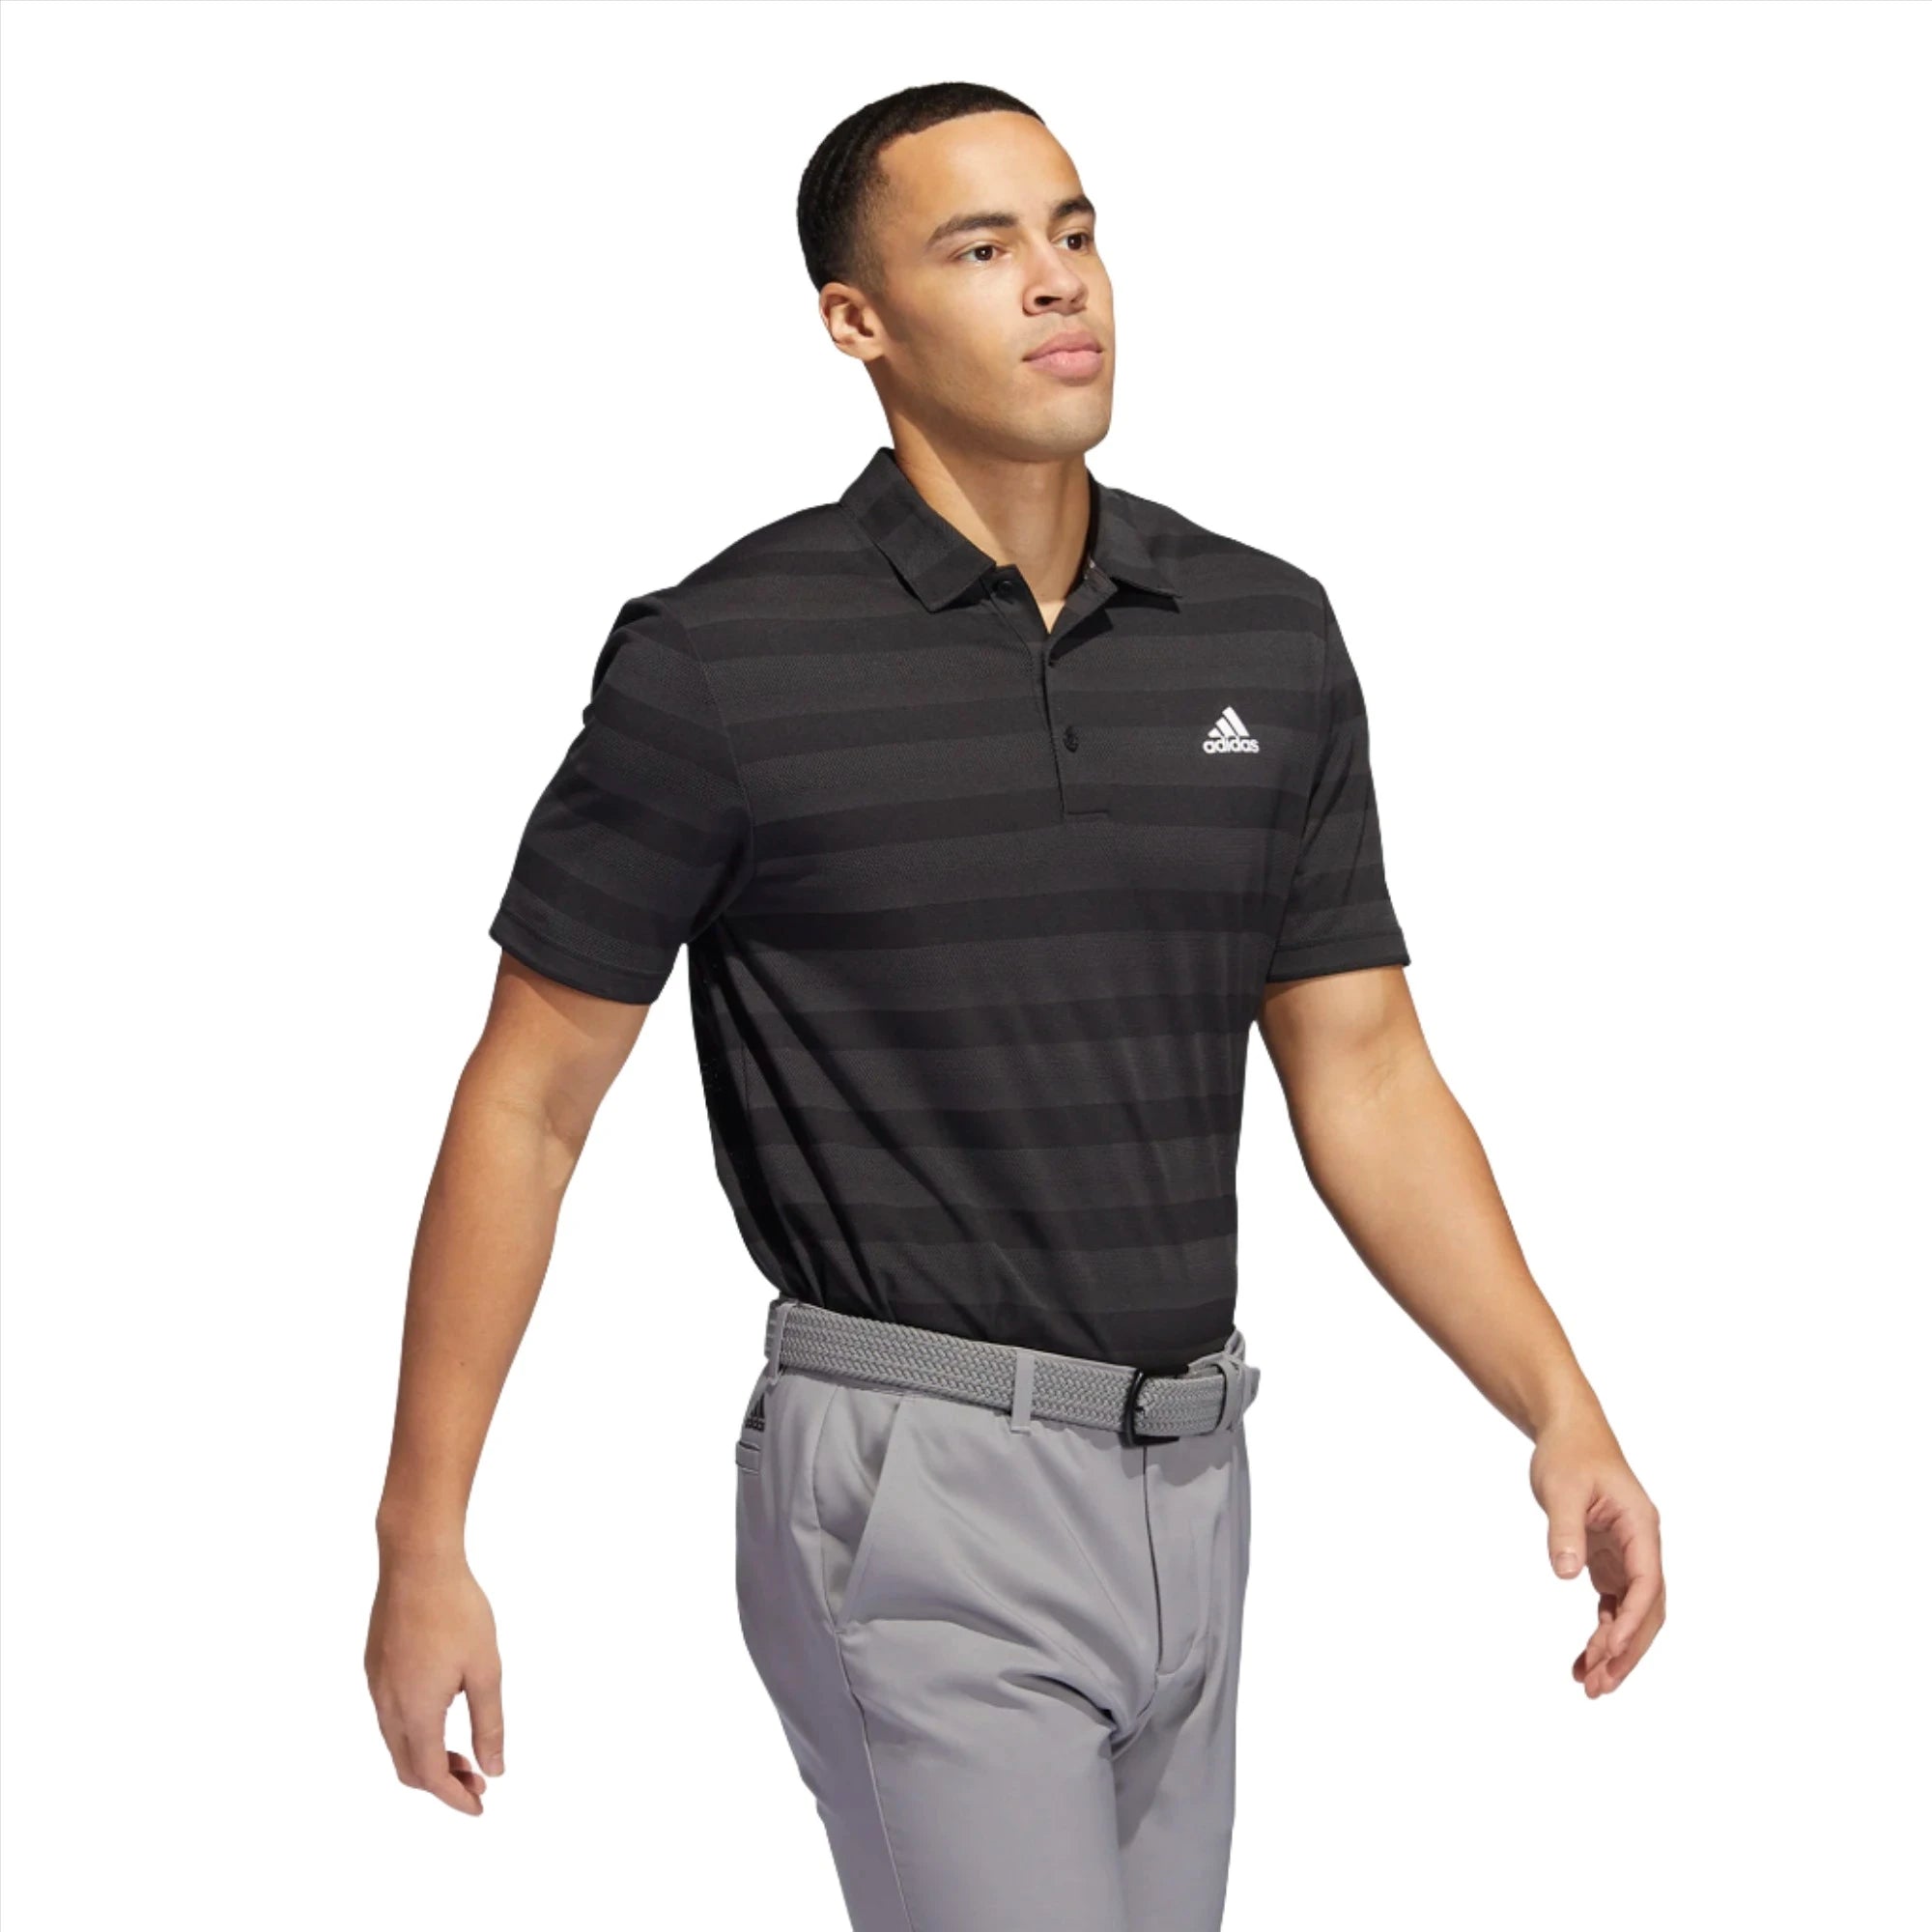 adidas Two Color Stripe Primegreen Golf Polo Shirt ADIDAS HOMBRE POLOS Galaxy Golf